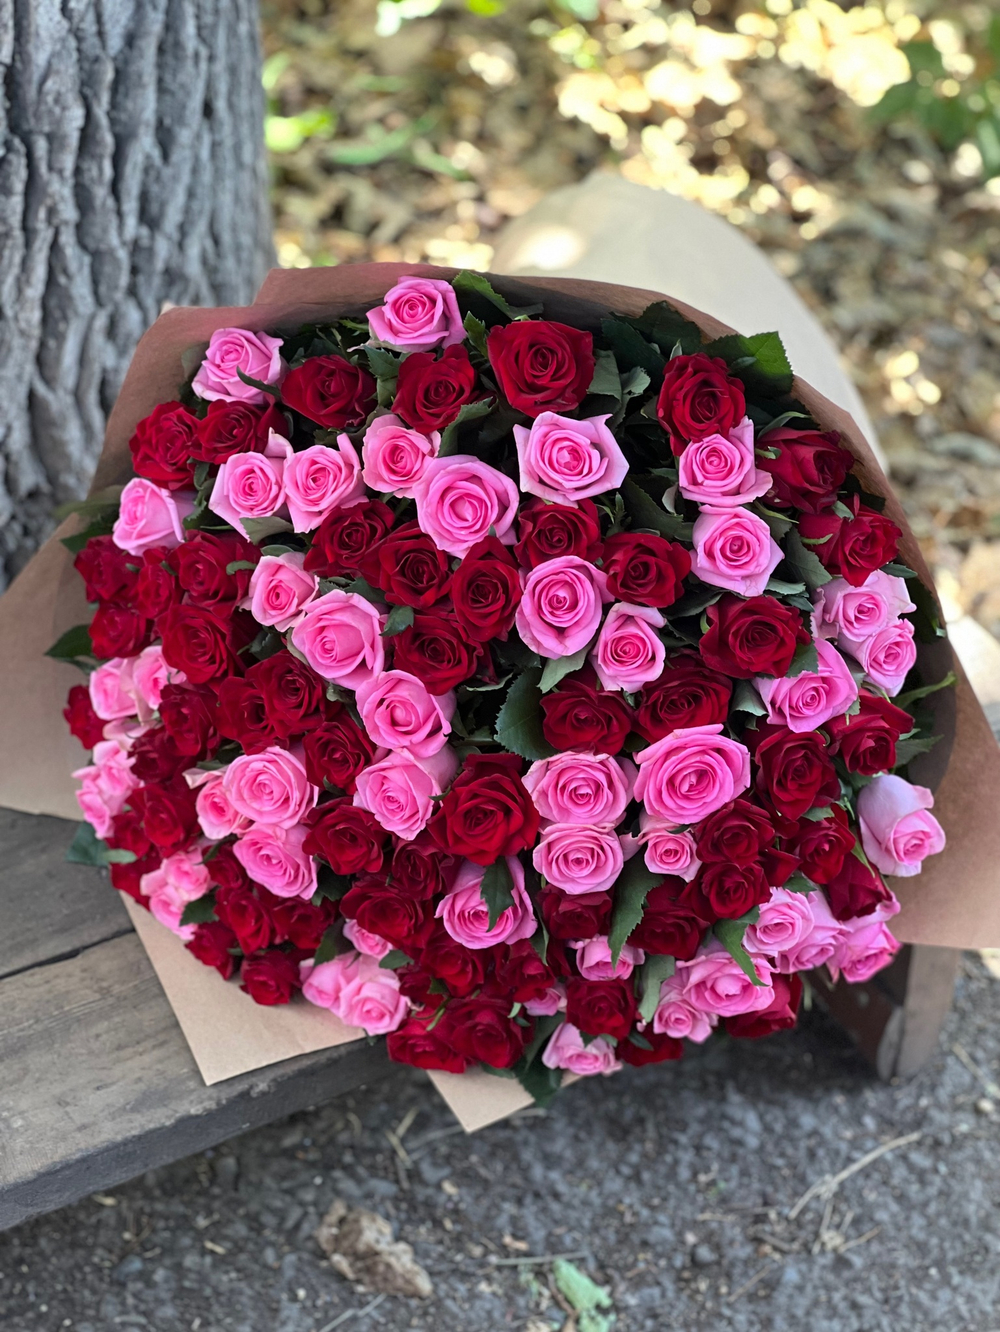 Букет из 101 красной и розовой розы